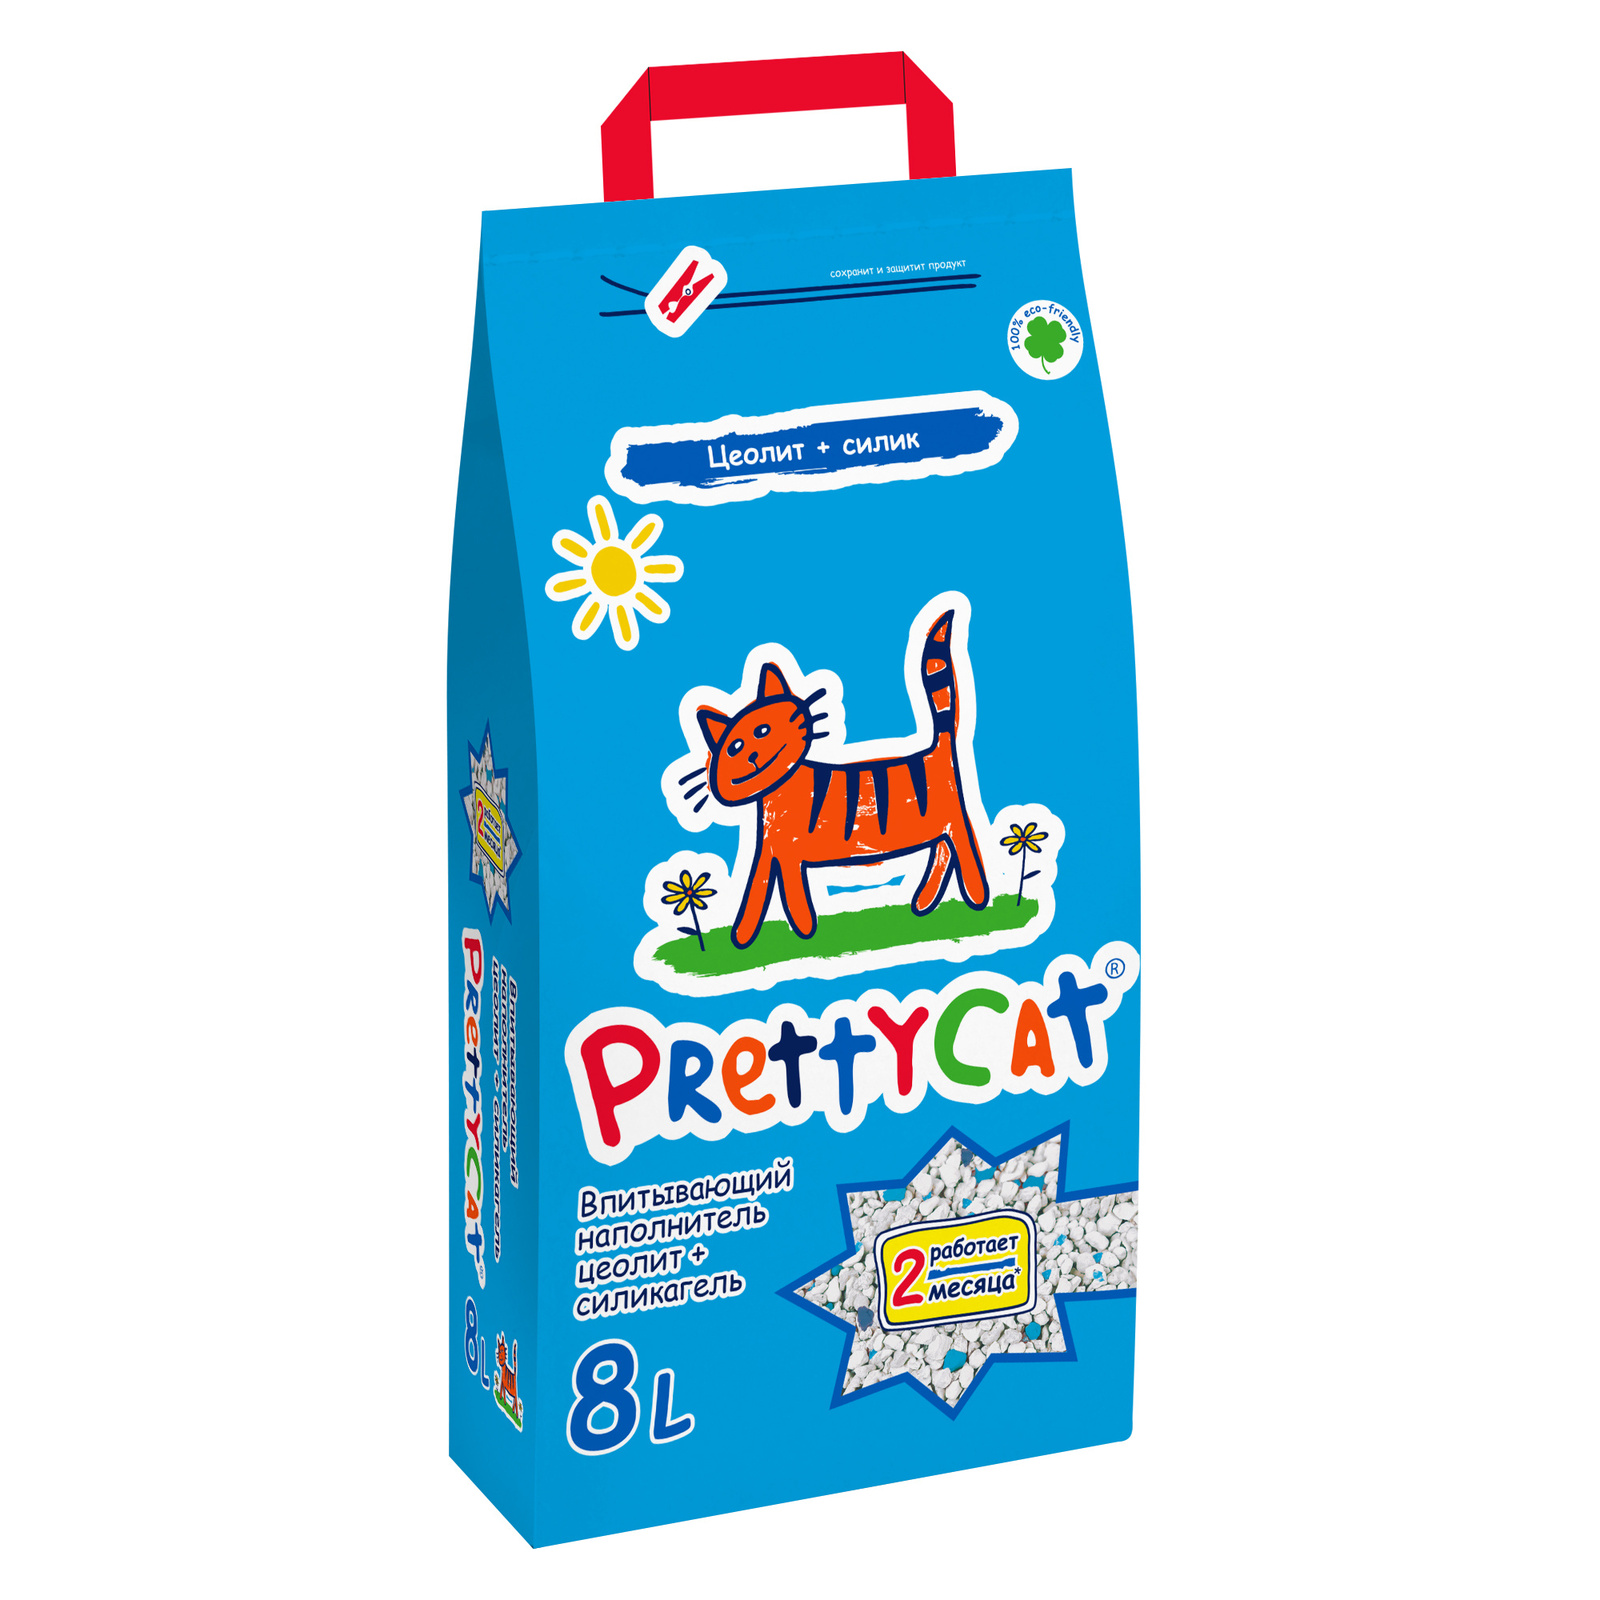 PrettyCat PrettyCat наполнитель впитывающий для кошачьих туалетов (4 кг) prettycat prettycat наполнитель впитывающий для кошачьих туалетов 4 кг